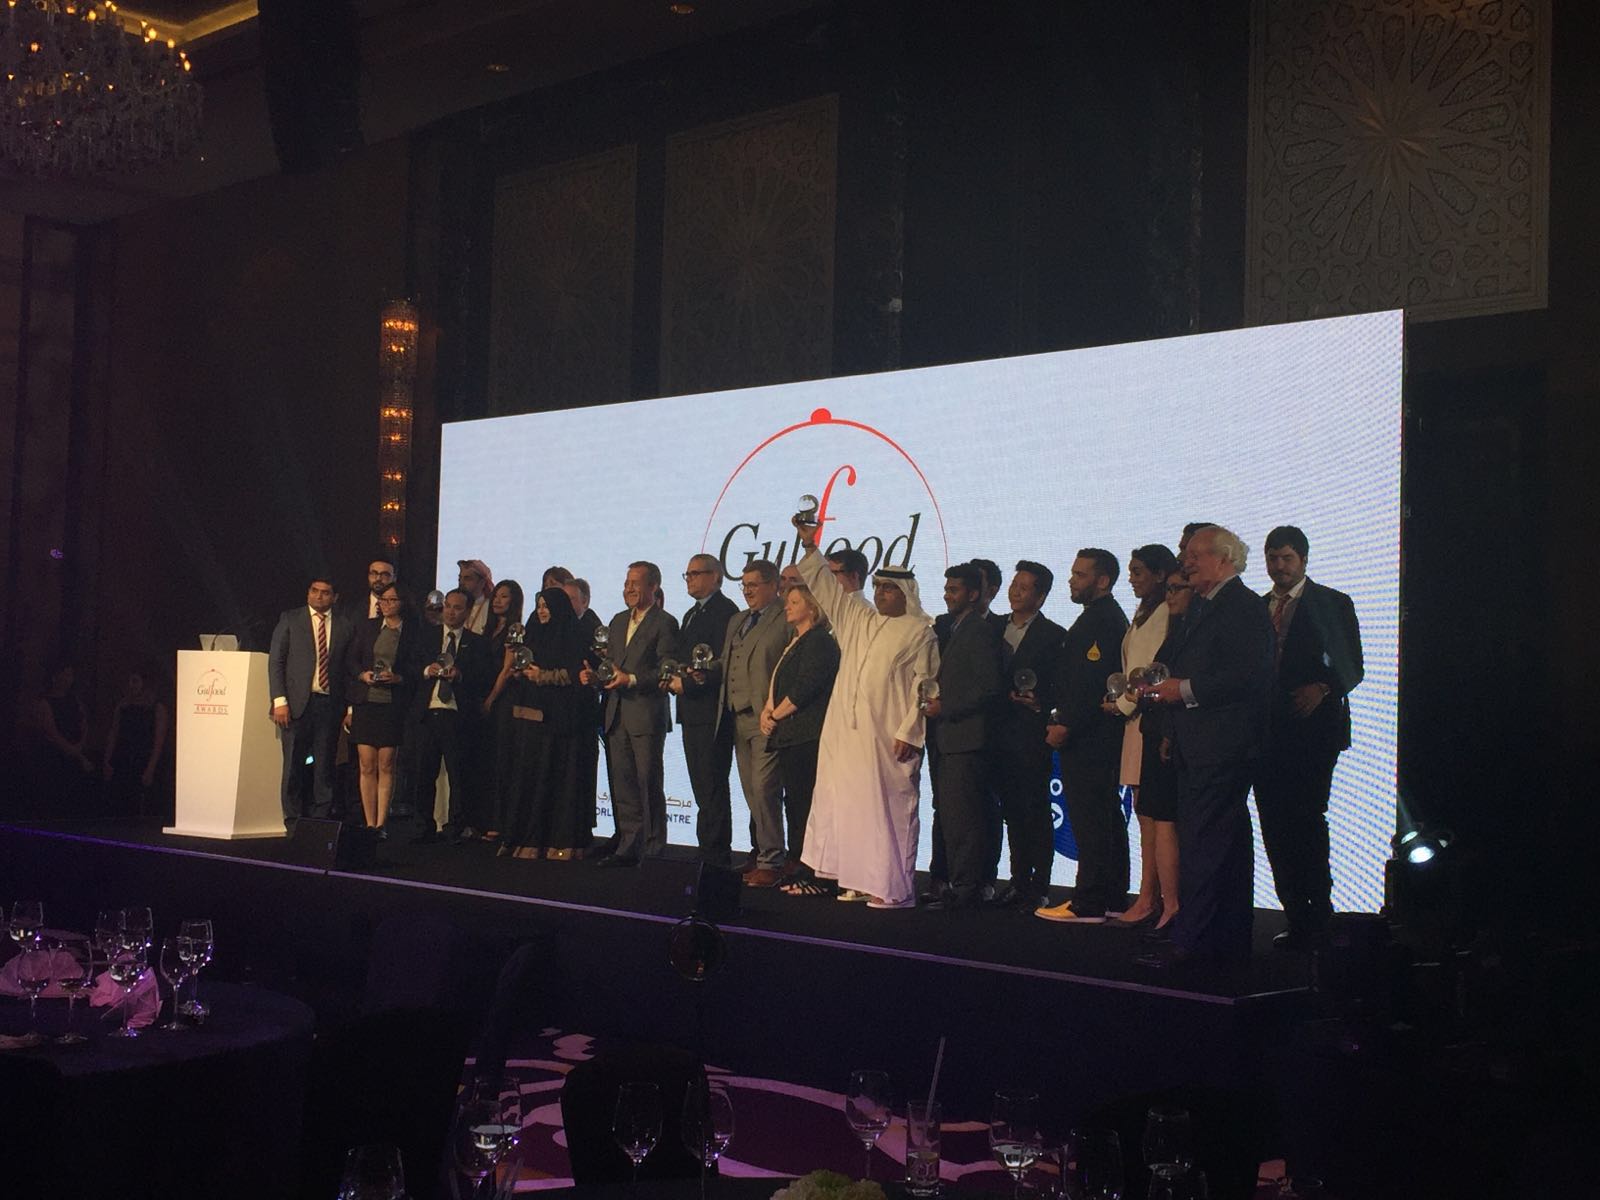 Al Dahra получил награду за лучший стенд на выставке Gulf Food 2016.